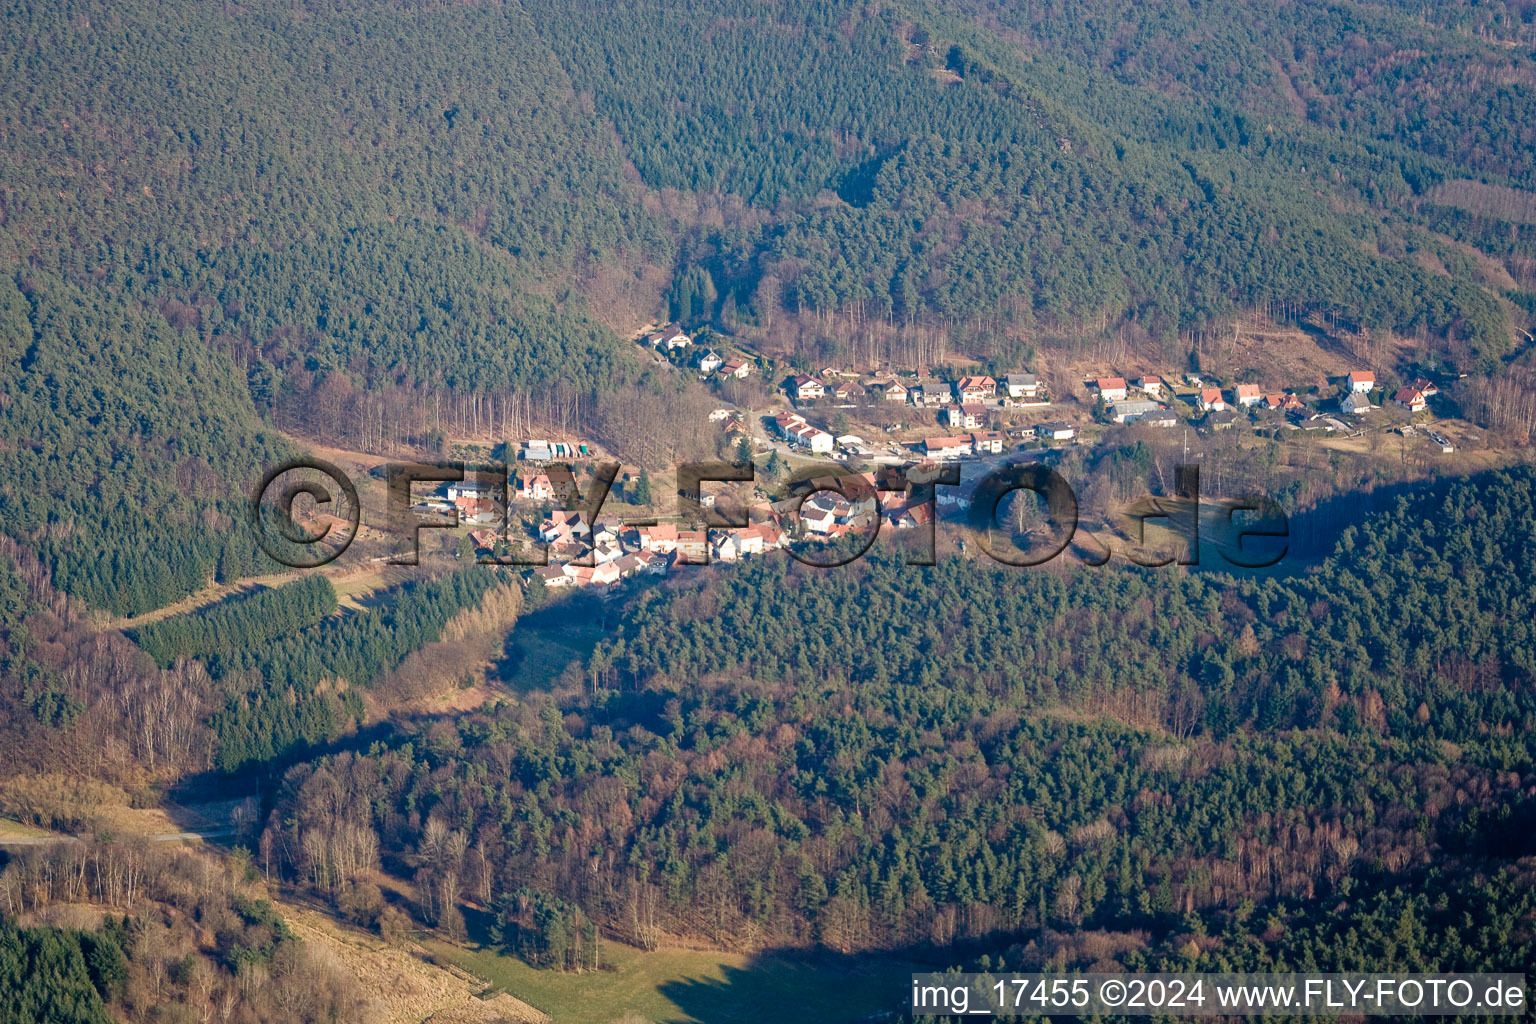 Village view in Darstein in the state Rhineland-Palatinate